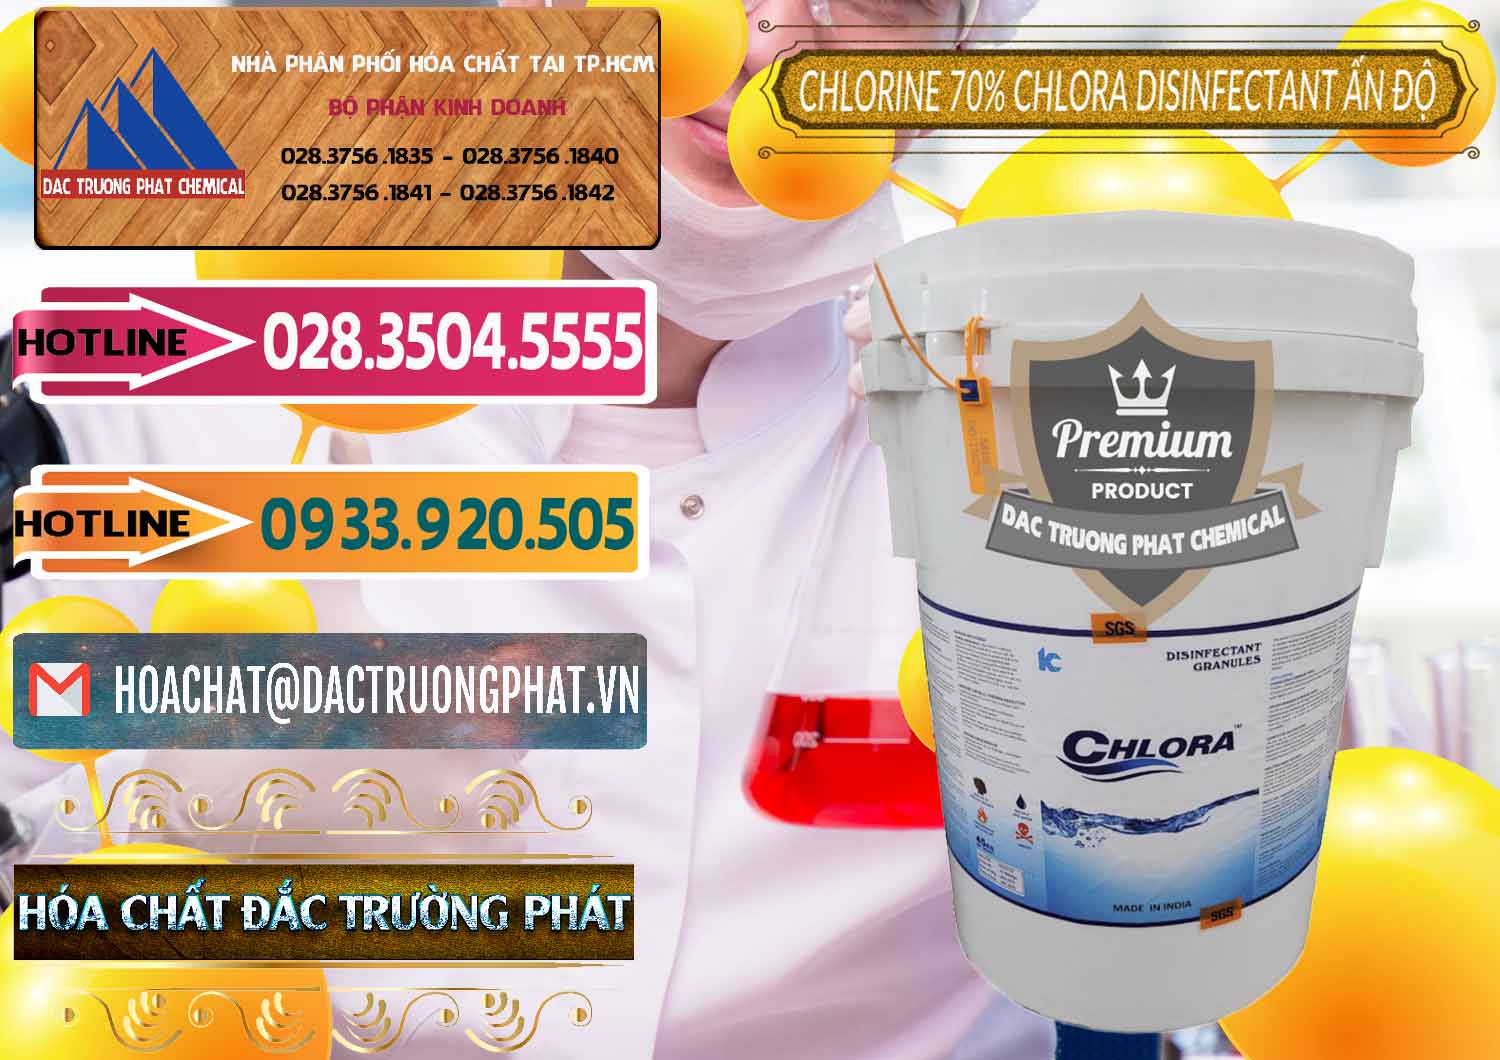 Công ty chuyên nhập khẩu và bán Chlorine – Clorin 70% Chlora Disinfectant Ấn Độ India - 0213 - Chuyên phân phối ( cung cấp ) hóa chất tại TP.HCM - dactruongphat.vn